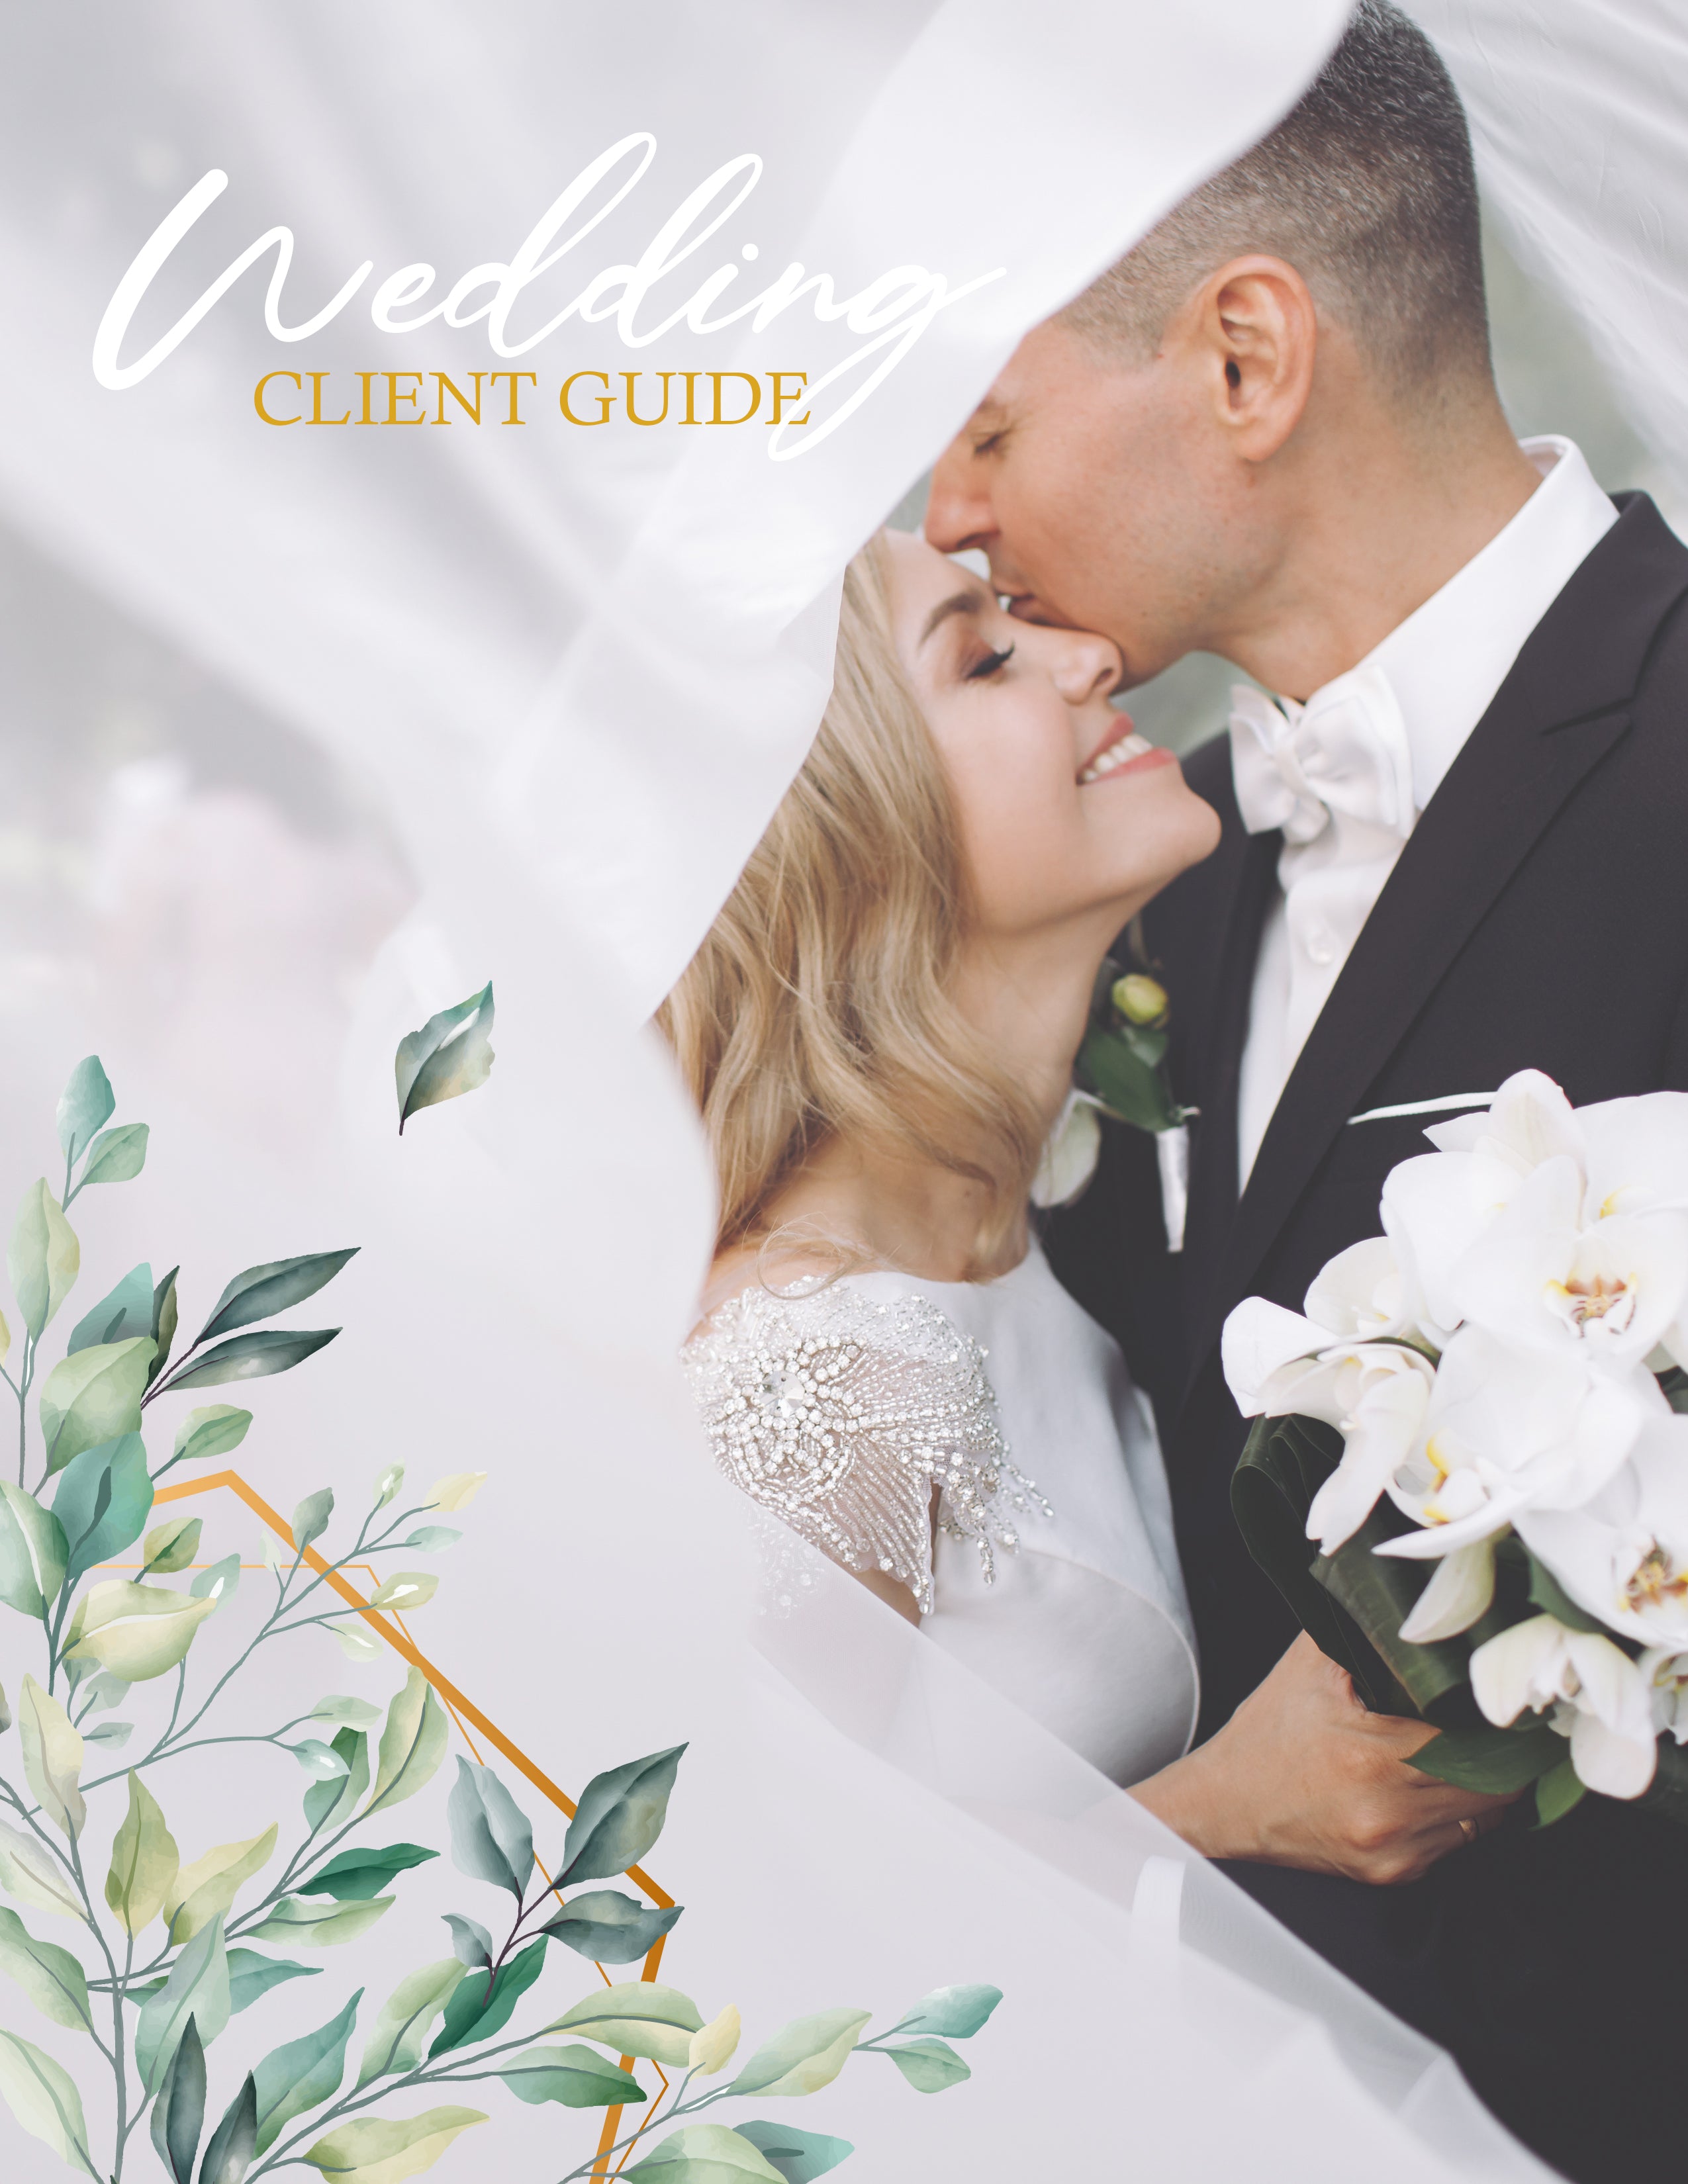 Để tạo ra những bức ảnh cưới đẹp nhất, bạn cần có một hướng dẫn chụp ảnh cưới tốt. Với template Welcome Packet miễn phí, bạn sẽ có một hướng dẫn khách hàng chụp ảnh cưới chuyên nghiệp và đầy đủ để giúp bạn tạo ra những bức ảnh cưới đẹp nhất cho ngày cưới của bạn! 